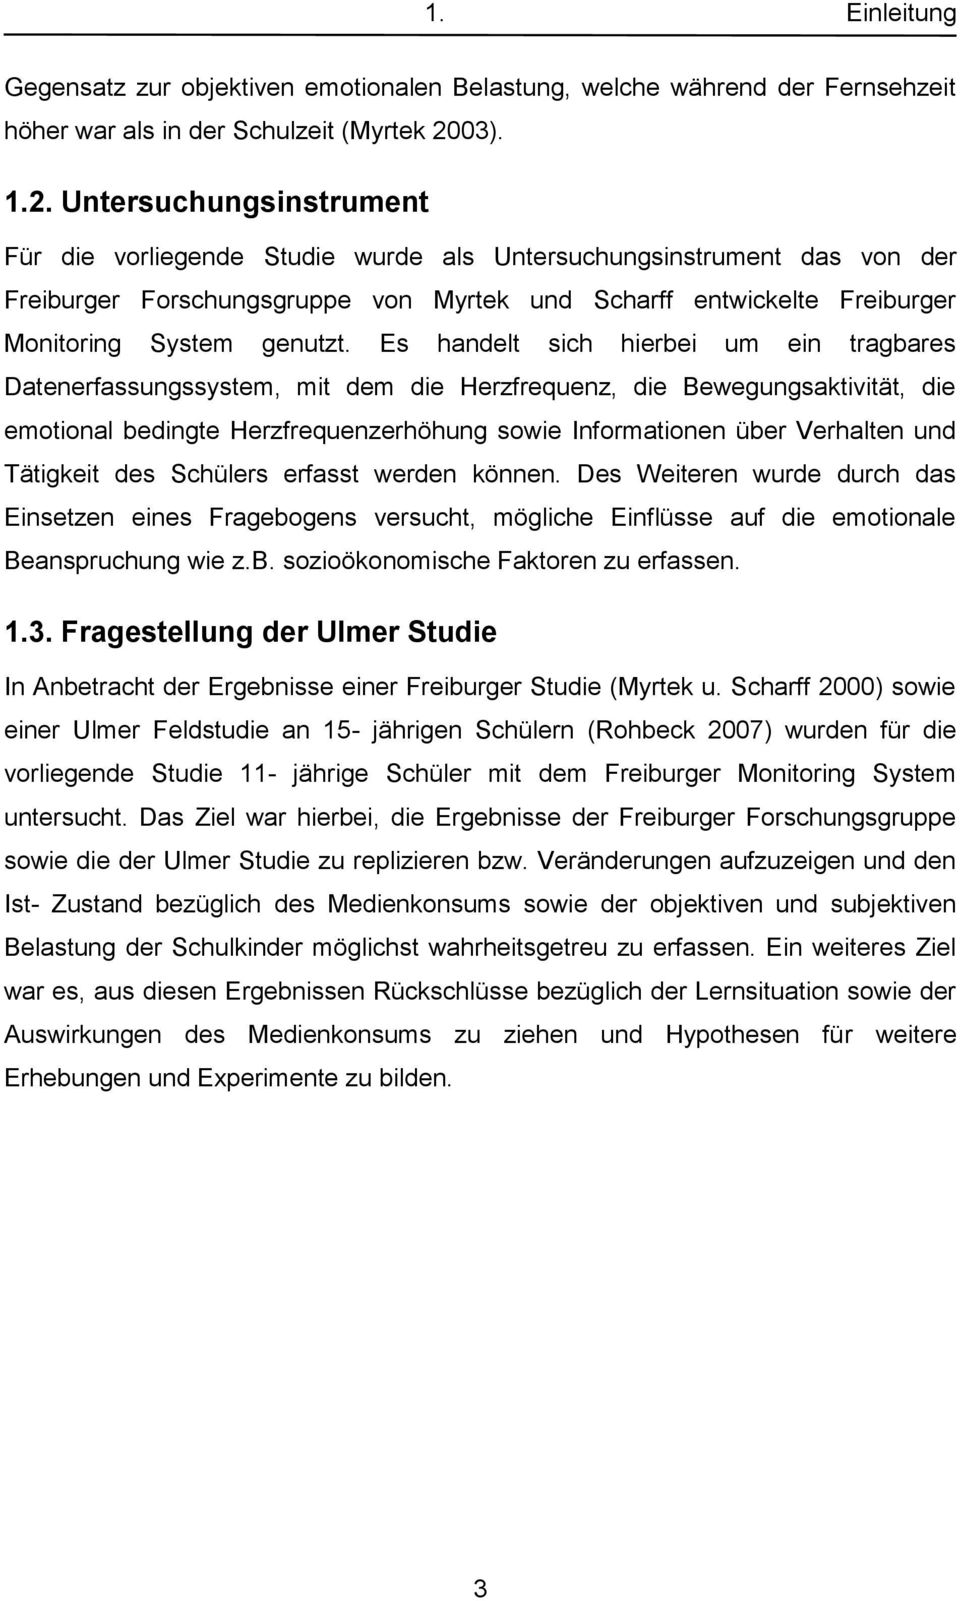 Untersuchungsinstrument Für die vorliegende Studie wurde als Untersuchungsinstrument das von der Freiburger Forschungsgruppe von Myrtek und Scharff entwickelte Freiburger Monitoring System genutzt.